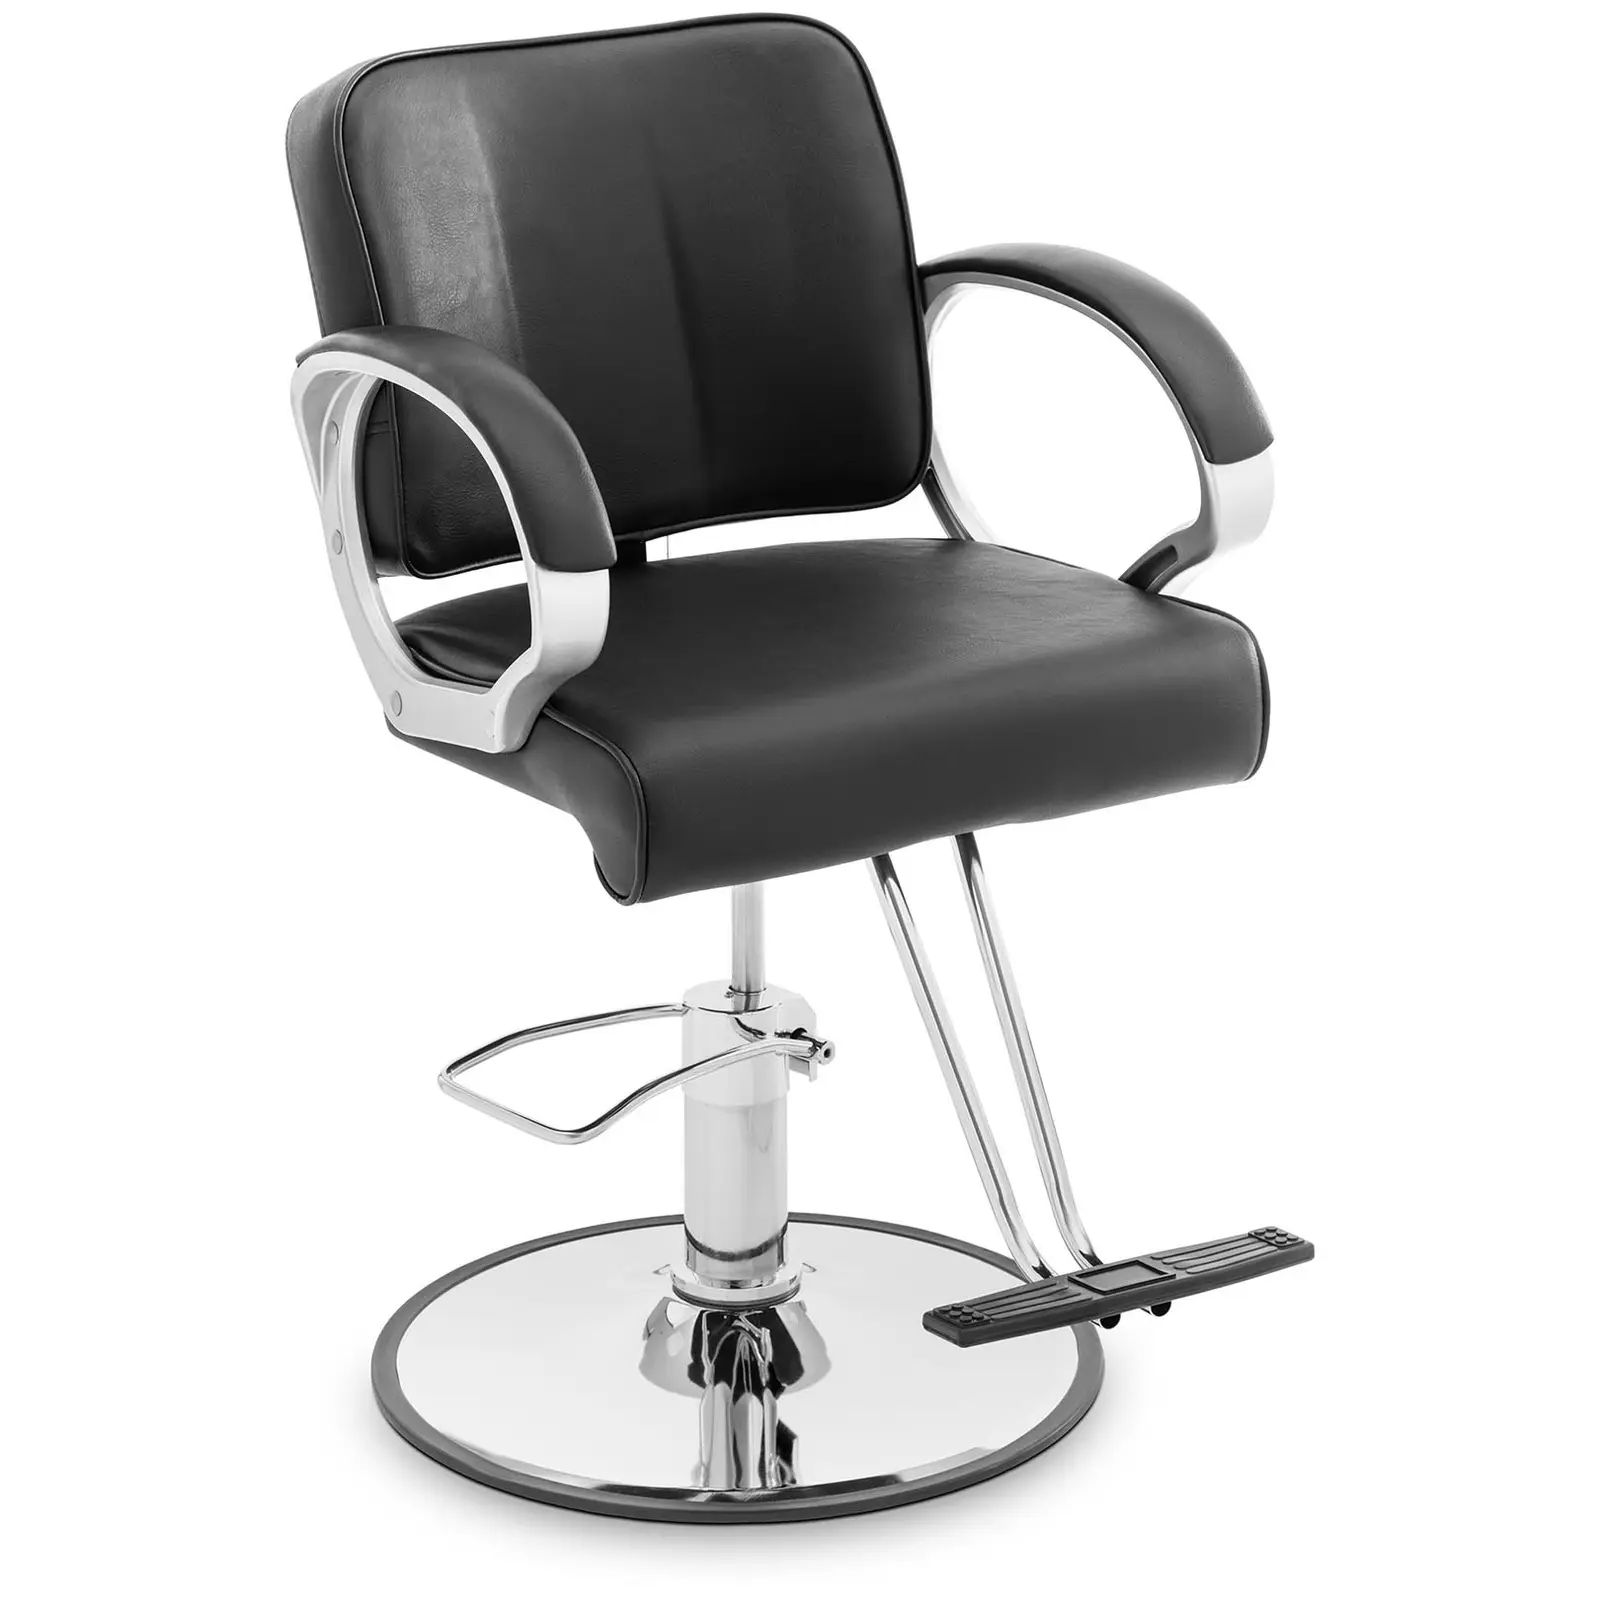 Grožio salono kėdė - T formos kojų atrama - 50 - 60 cm - 180 kg - juoda